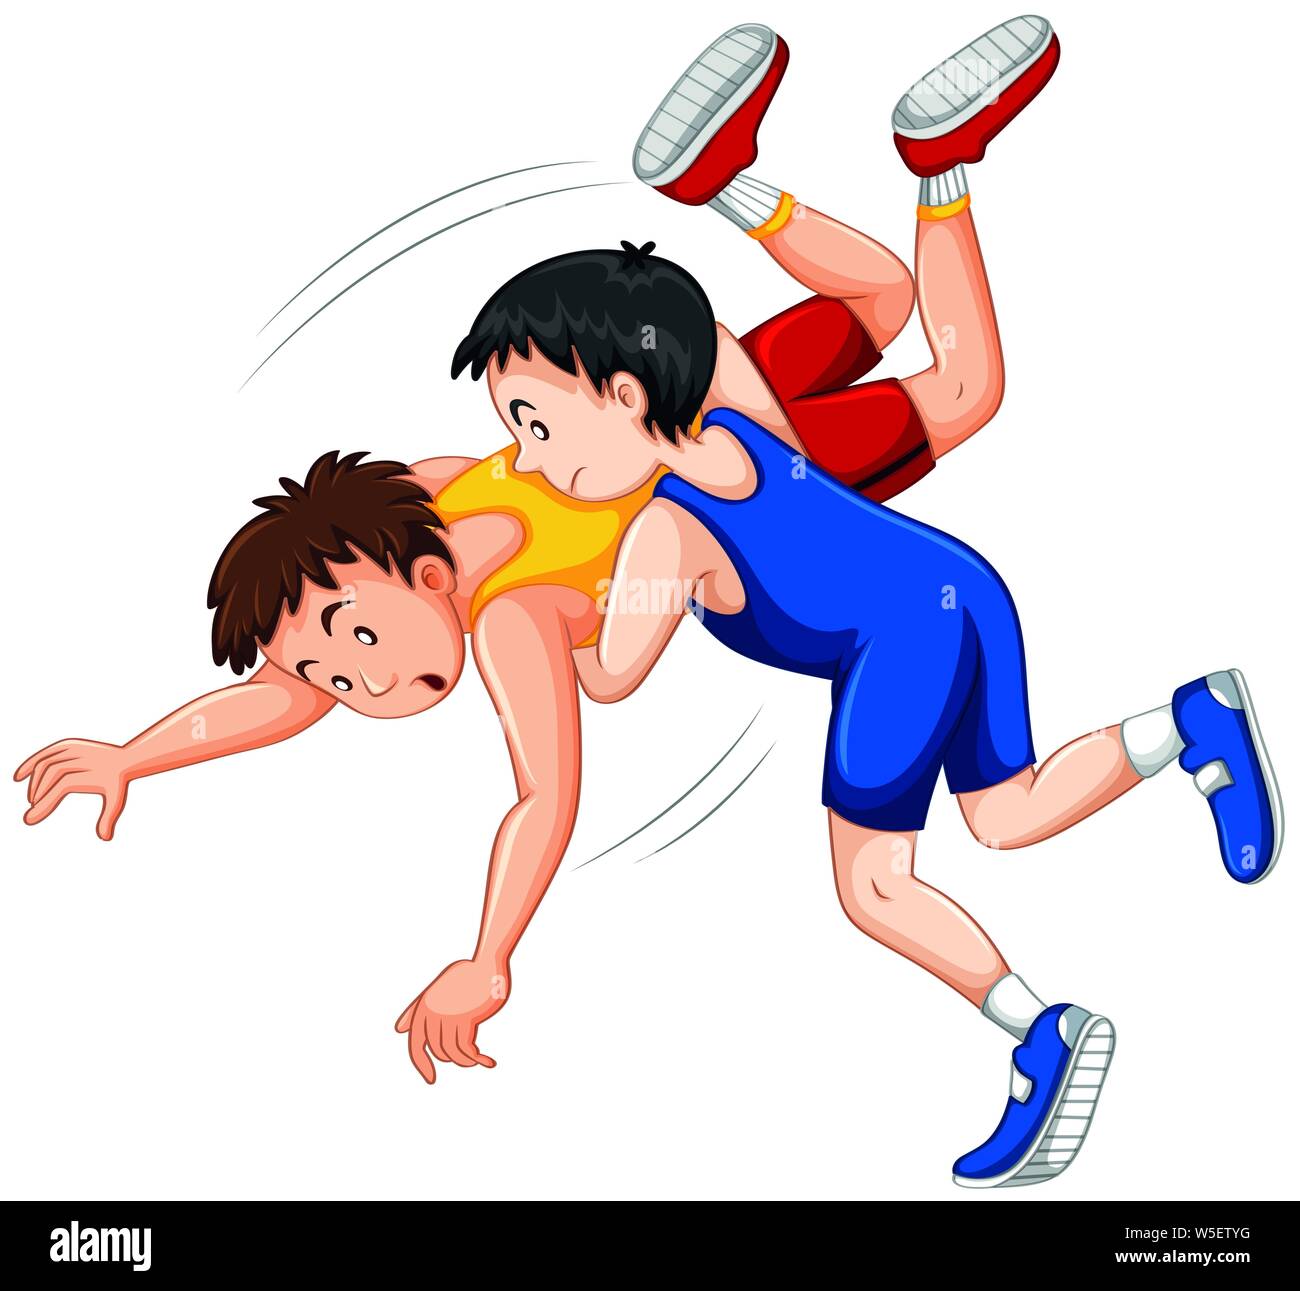 Deux garçons lutte judo lutte sur le sport illustration de la concurrence Illustration de Vecteur